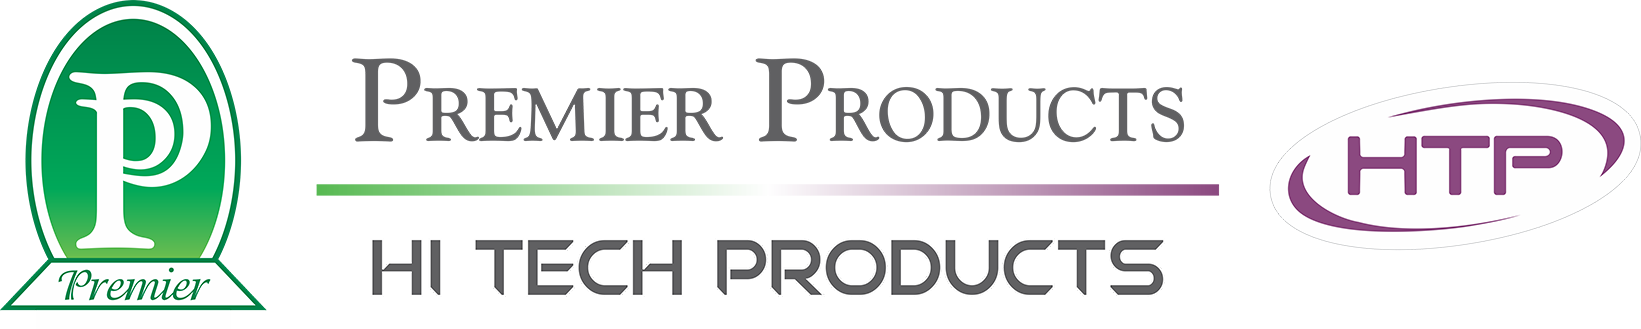 Premier Hitech Products